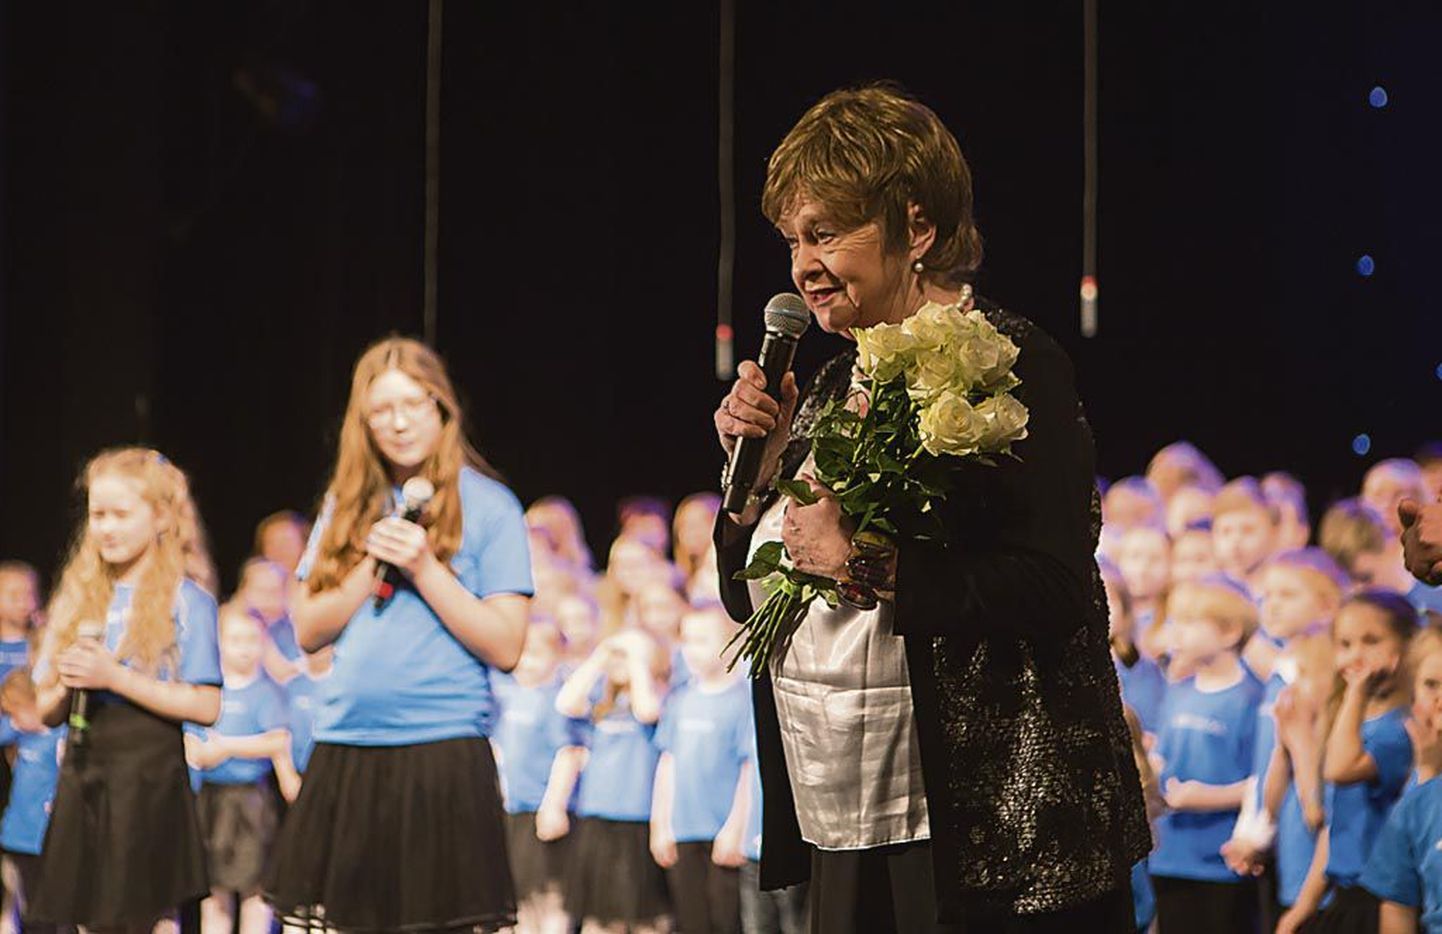 SA Pärnu Vabahariduskeskus pühendas kontsertetenduse “Leelo-Leelo” riigi 99. sünnipäevale ja sidus selle Leelo Tungla suguvõsaga, esitus liigutas luuletajat hingepõhjani.